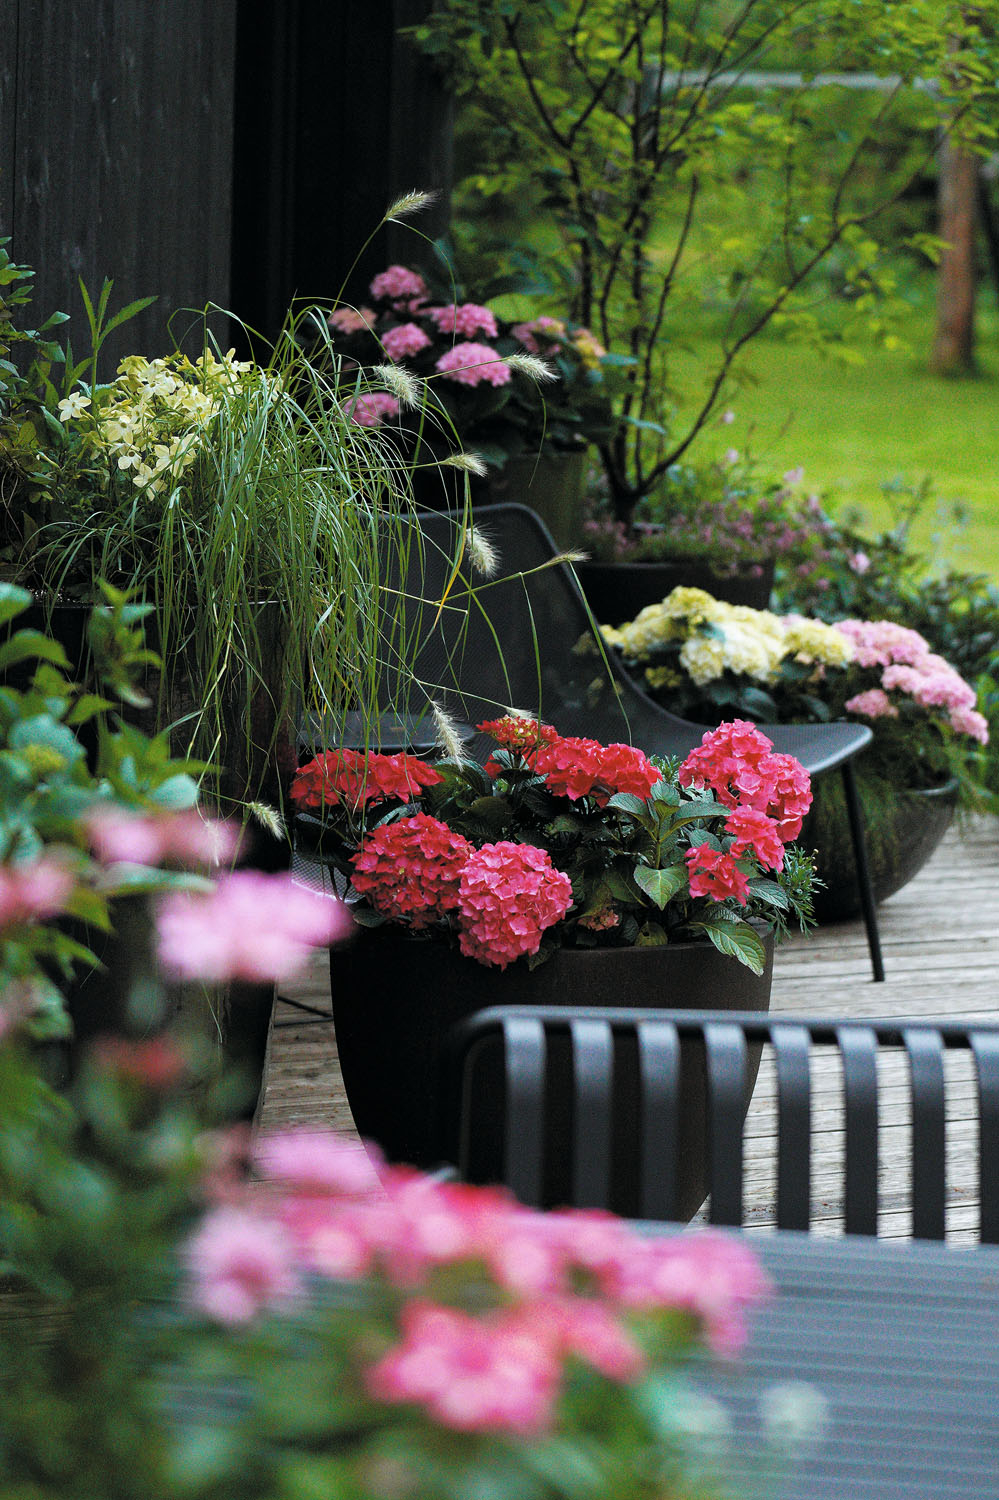 Vasaras terases iekārtojums, kur dominē platlapu hortenzijas. Foto: no personiskā arhīva